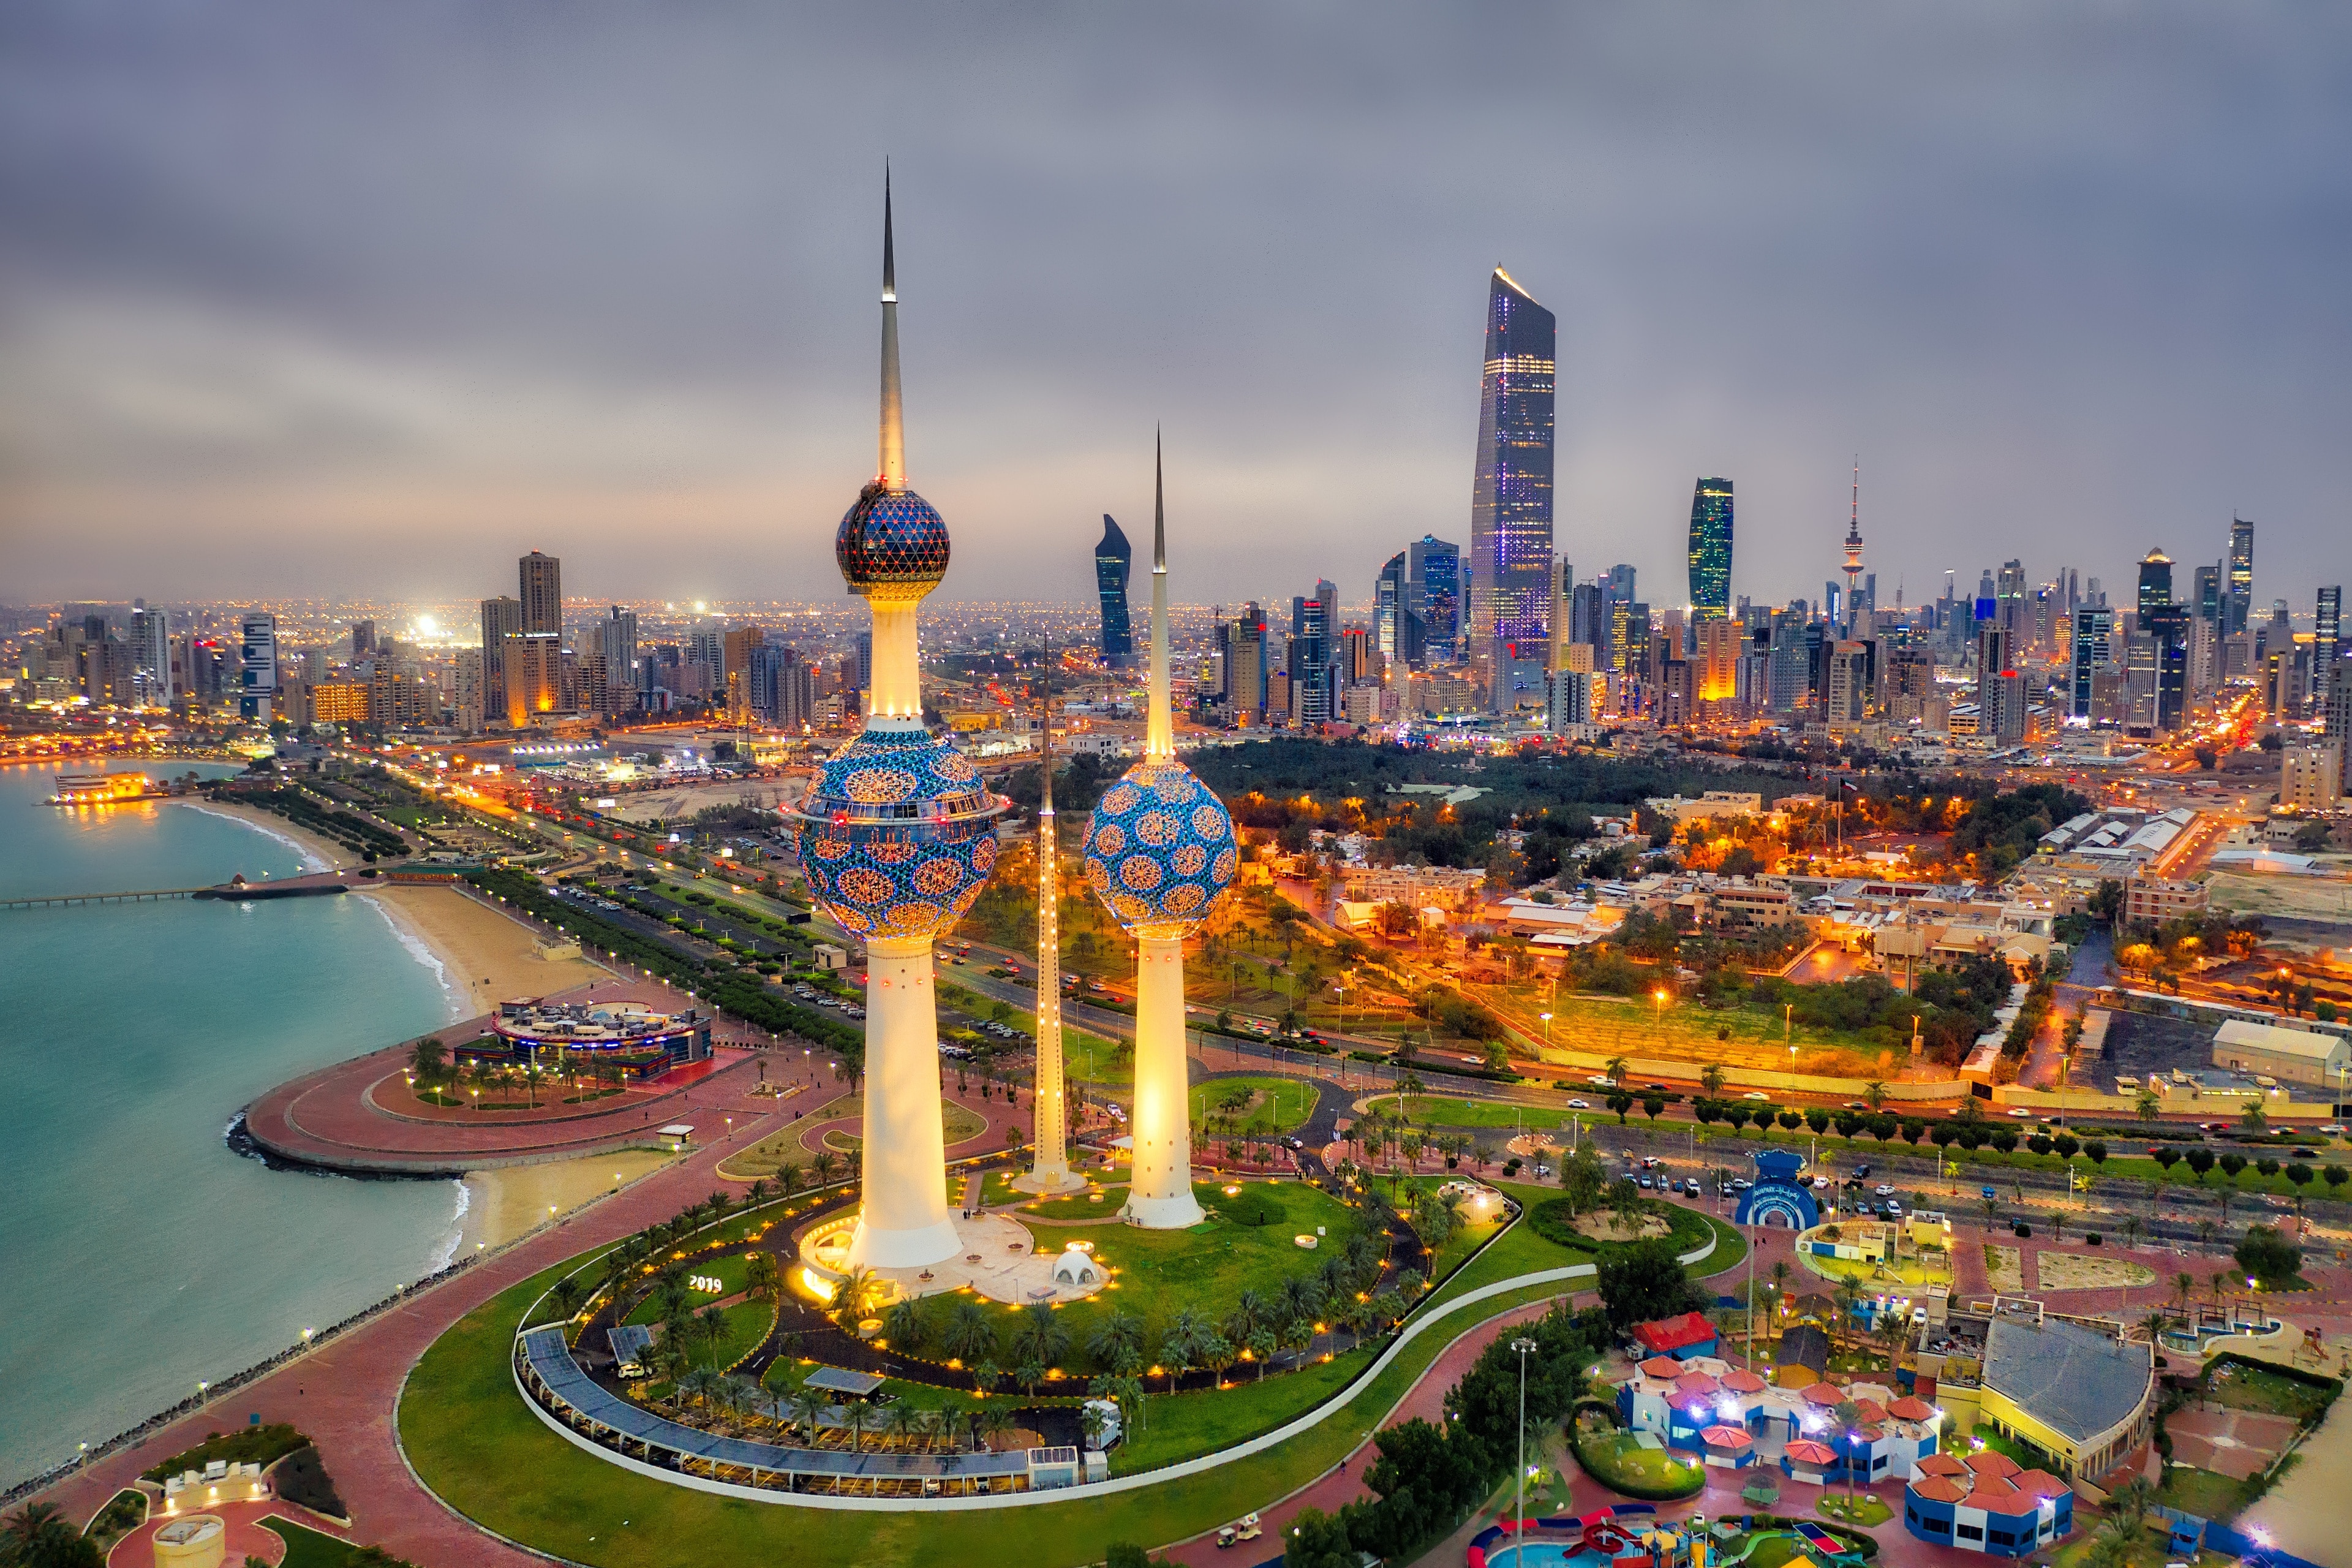 Du lịch Kuwait City: Tuyệt vời nhất tại Kuwait City 2022| Expedia.com.vn